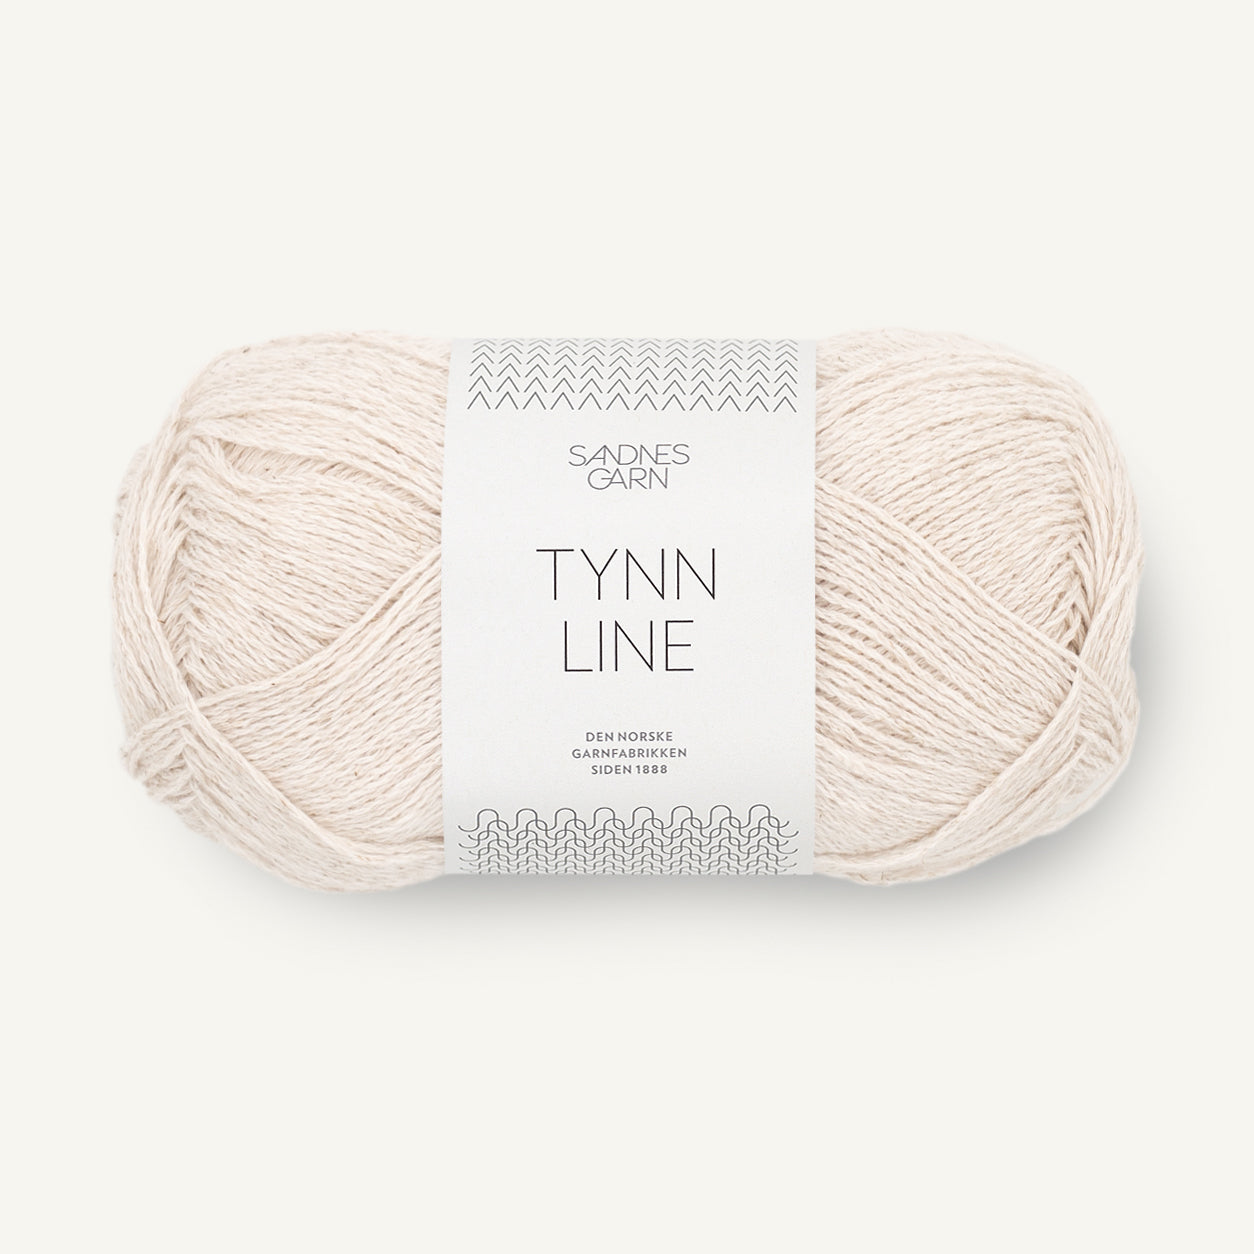 Tynn Line kit [1015]